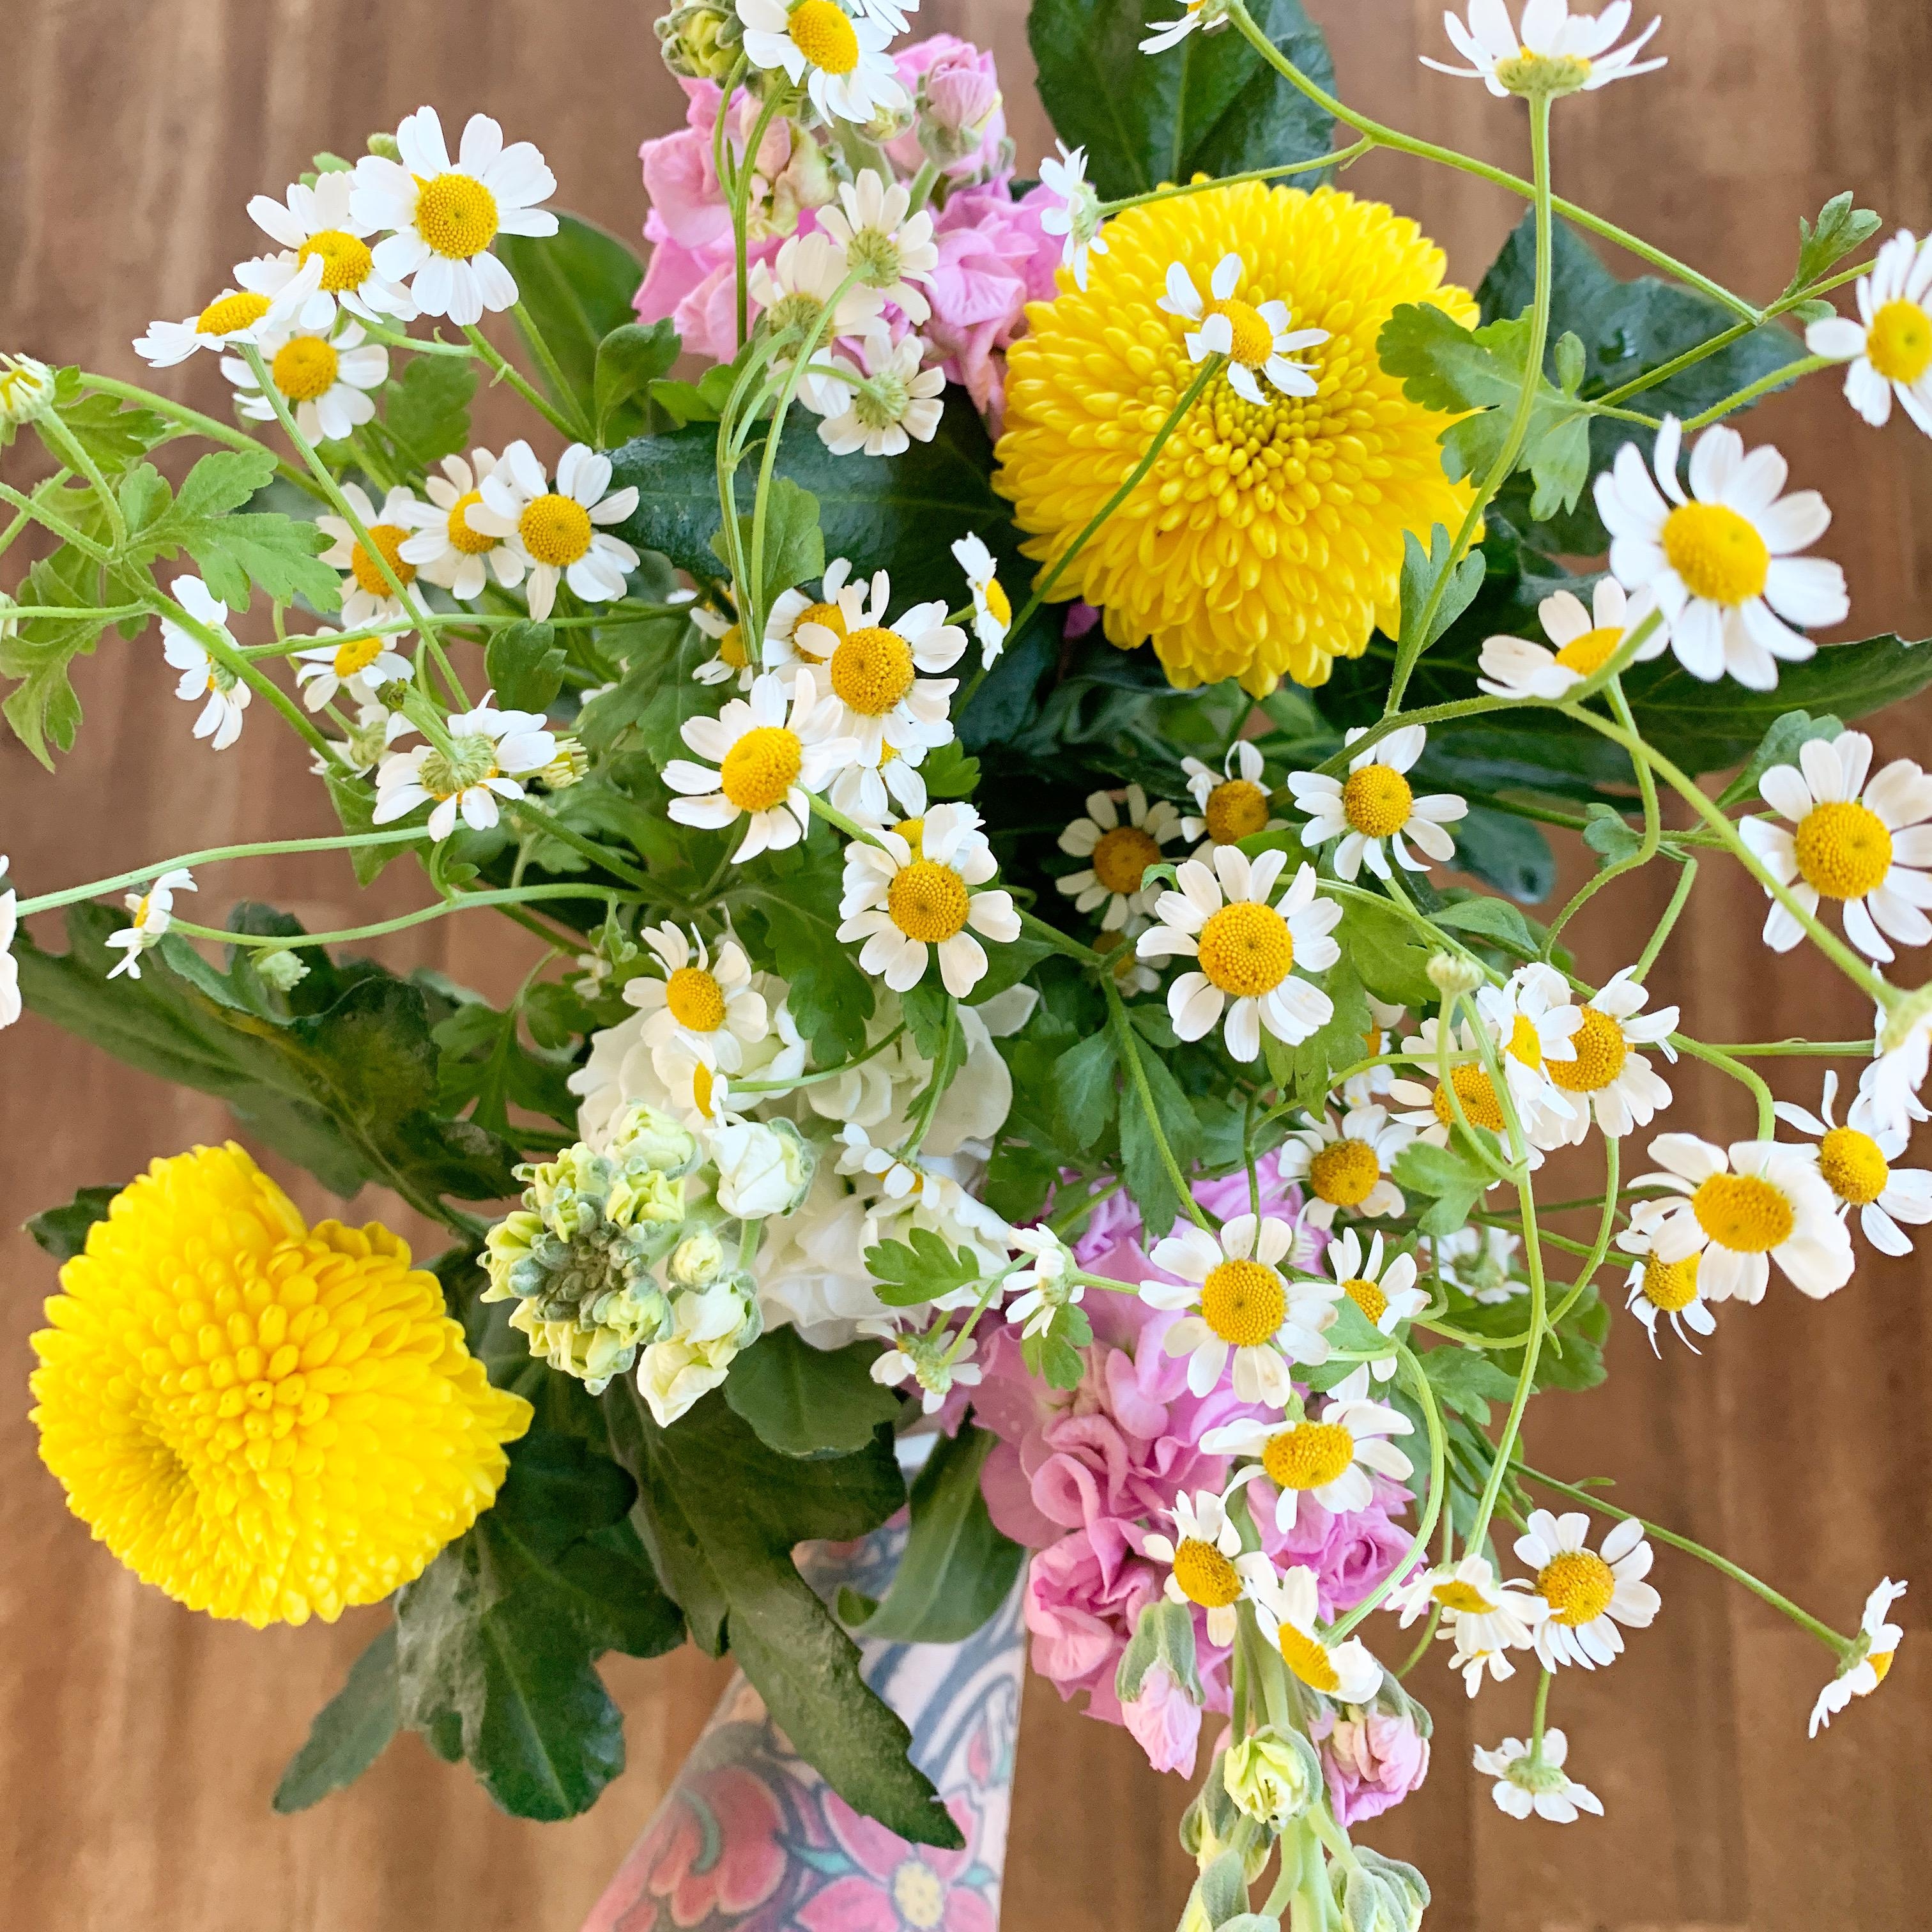 
#freshflowers #gelbliebe #colorfulhome #blumenliebe #blumenmachenglücklich #flowerpower #farbenfroh